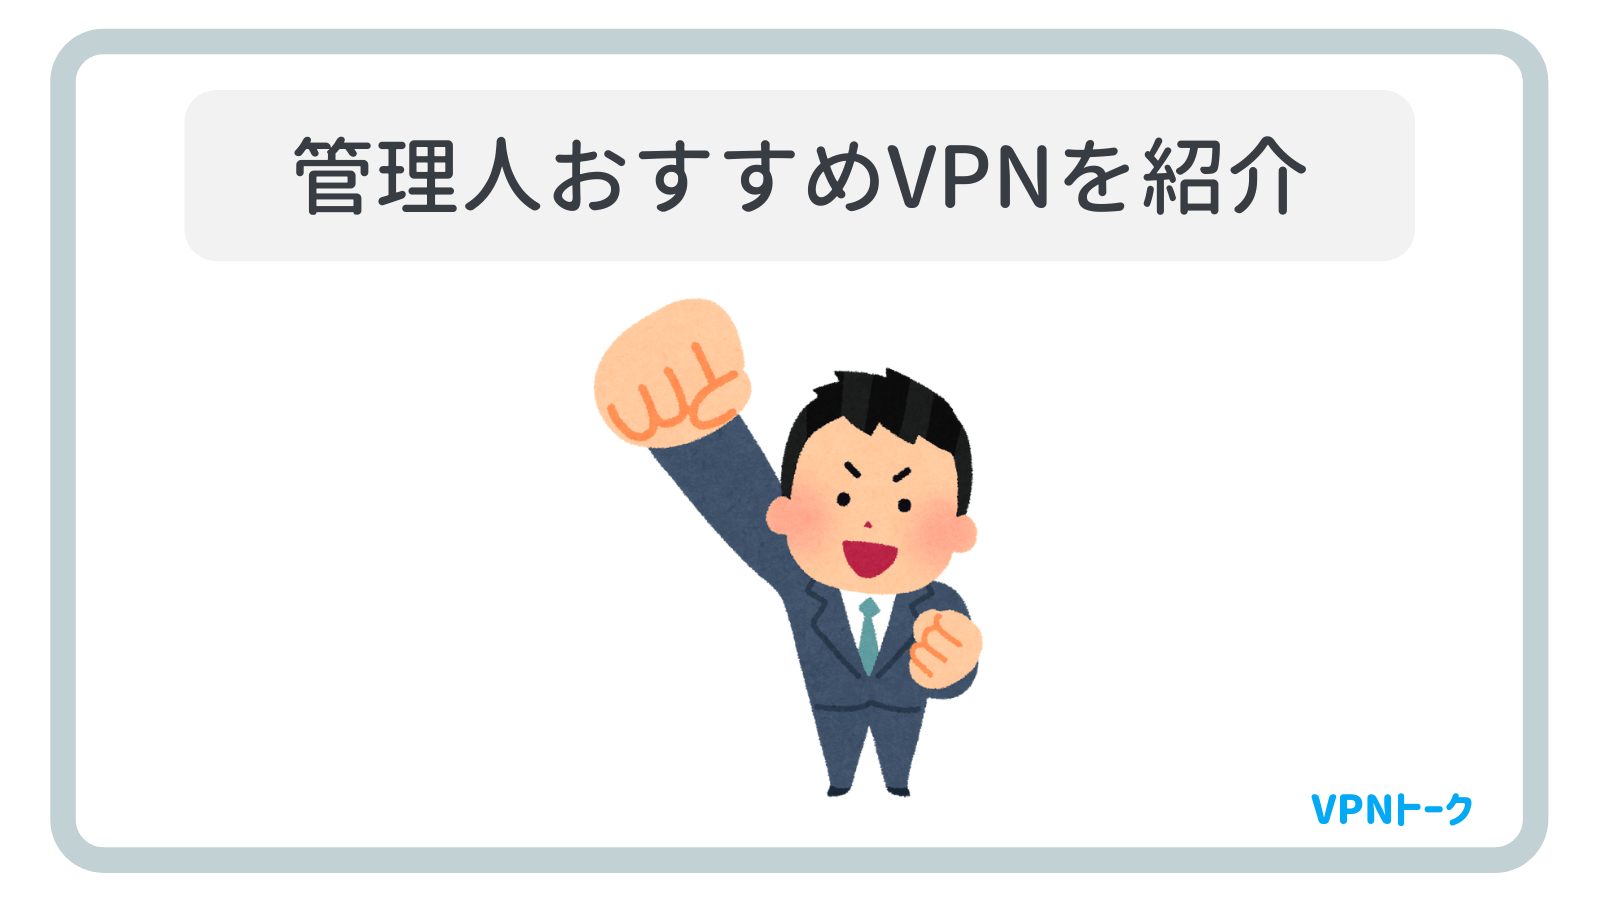 VPNトーク管理人おすすめのVPNを紹介